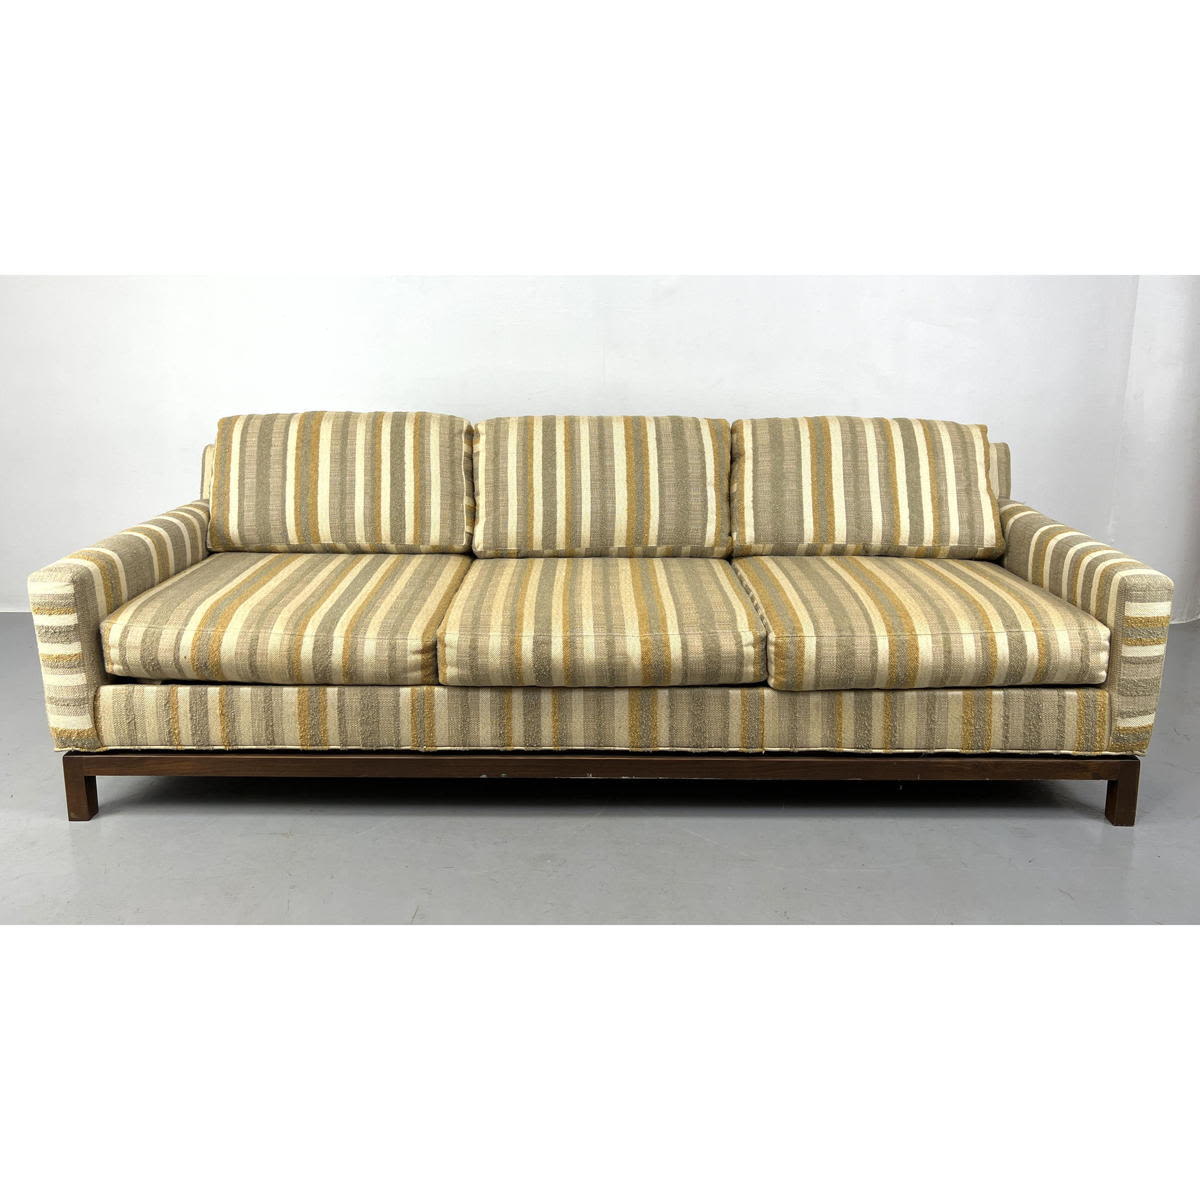 SELIG Monroe Striped Upholstery